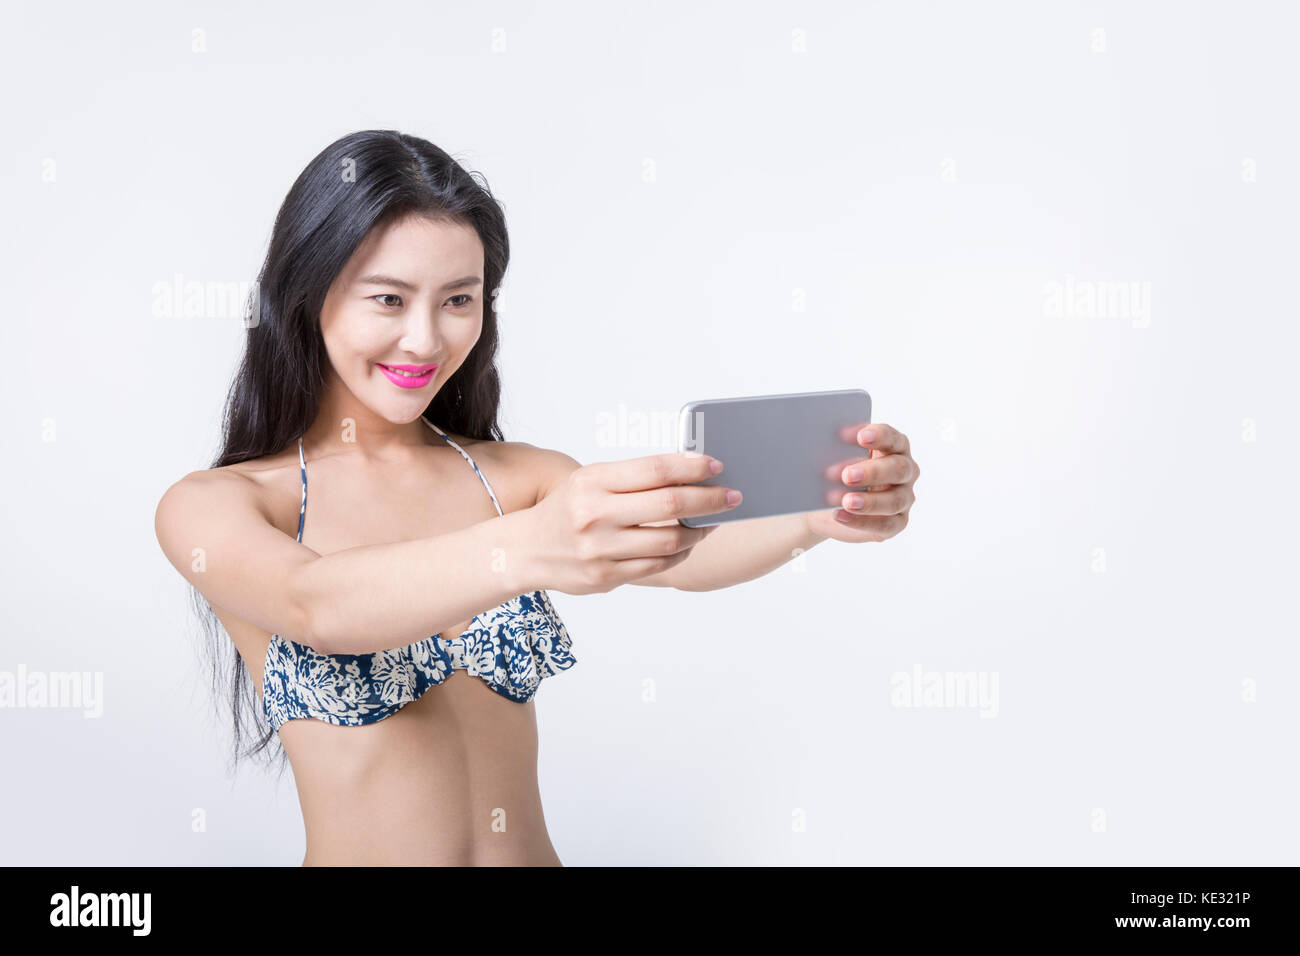 Ritratto di giovane sorridente donna slim in bikini prendendo un selfie Foto Stock